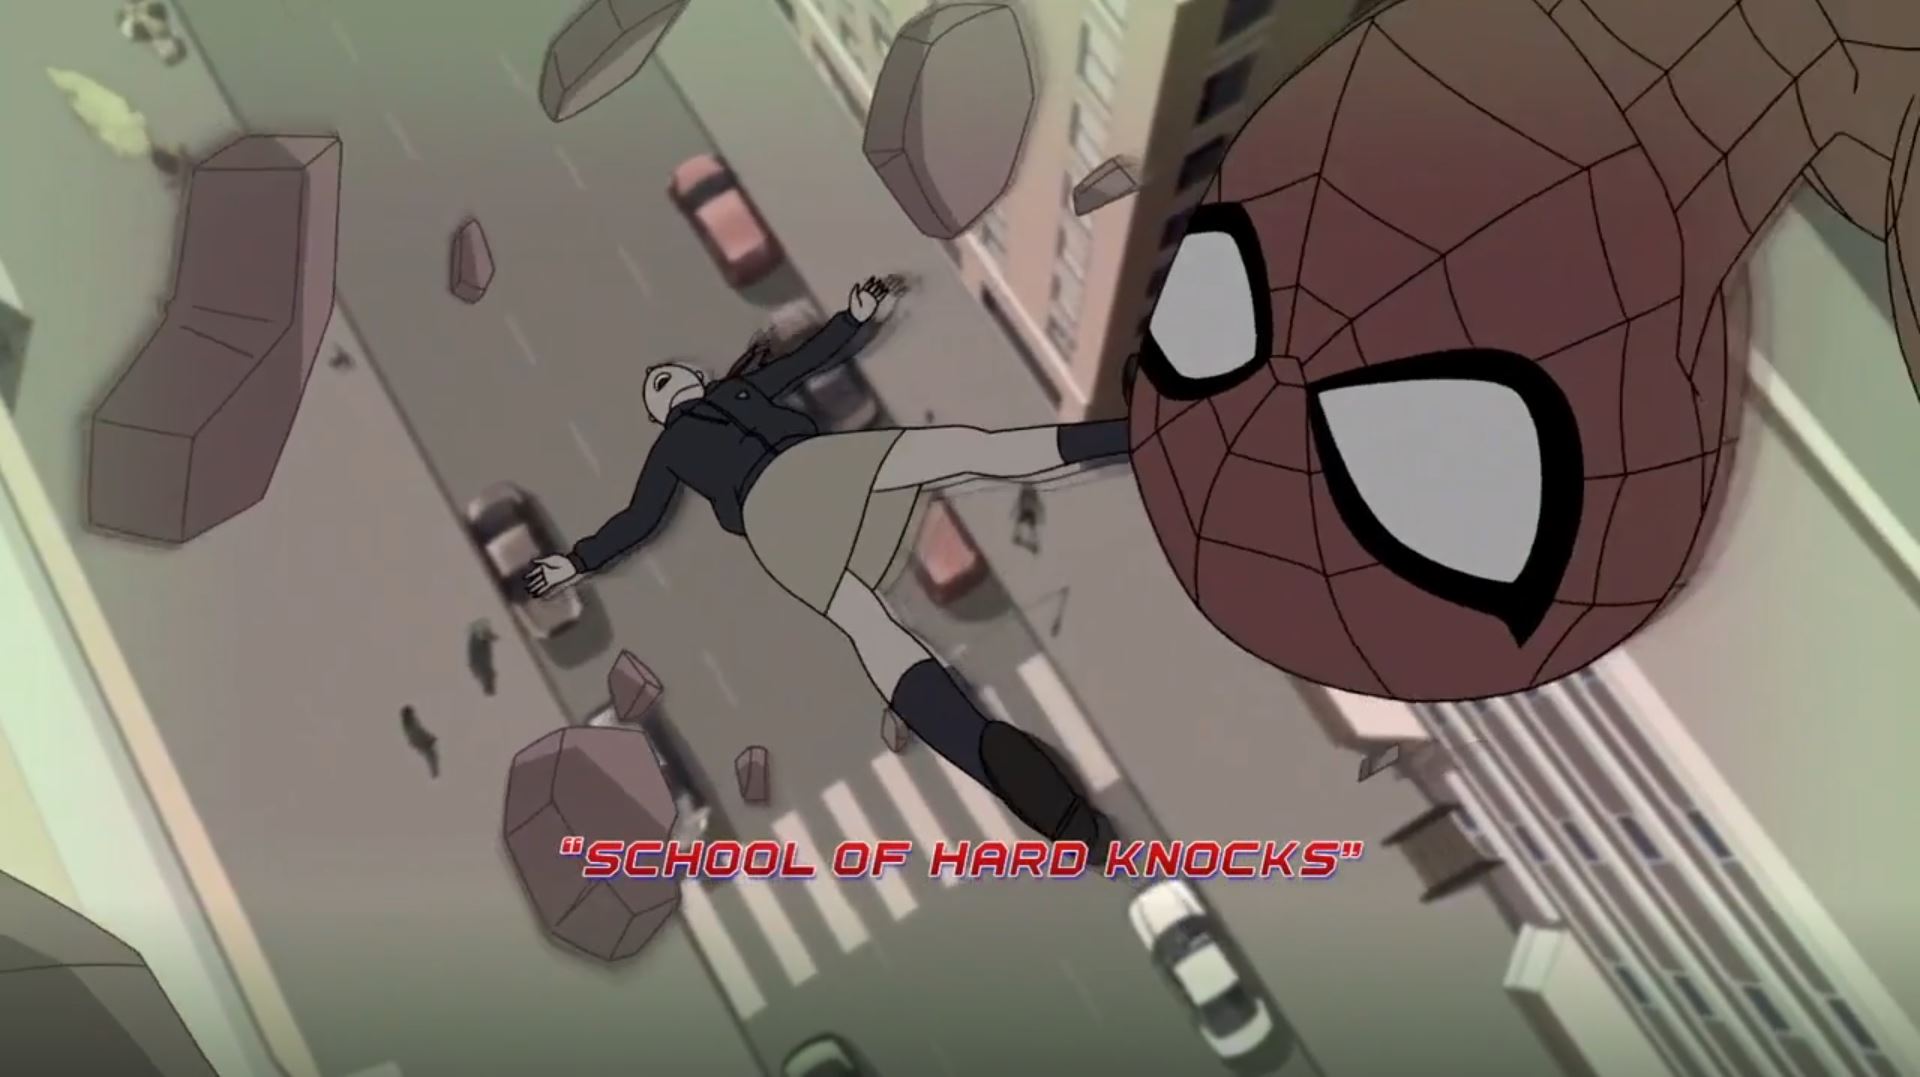 Marvel's Spider-Man 2, Marvel Database